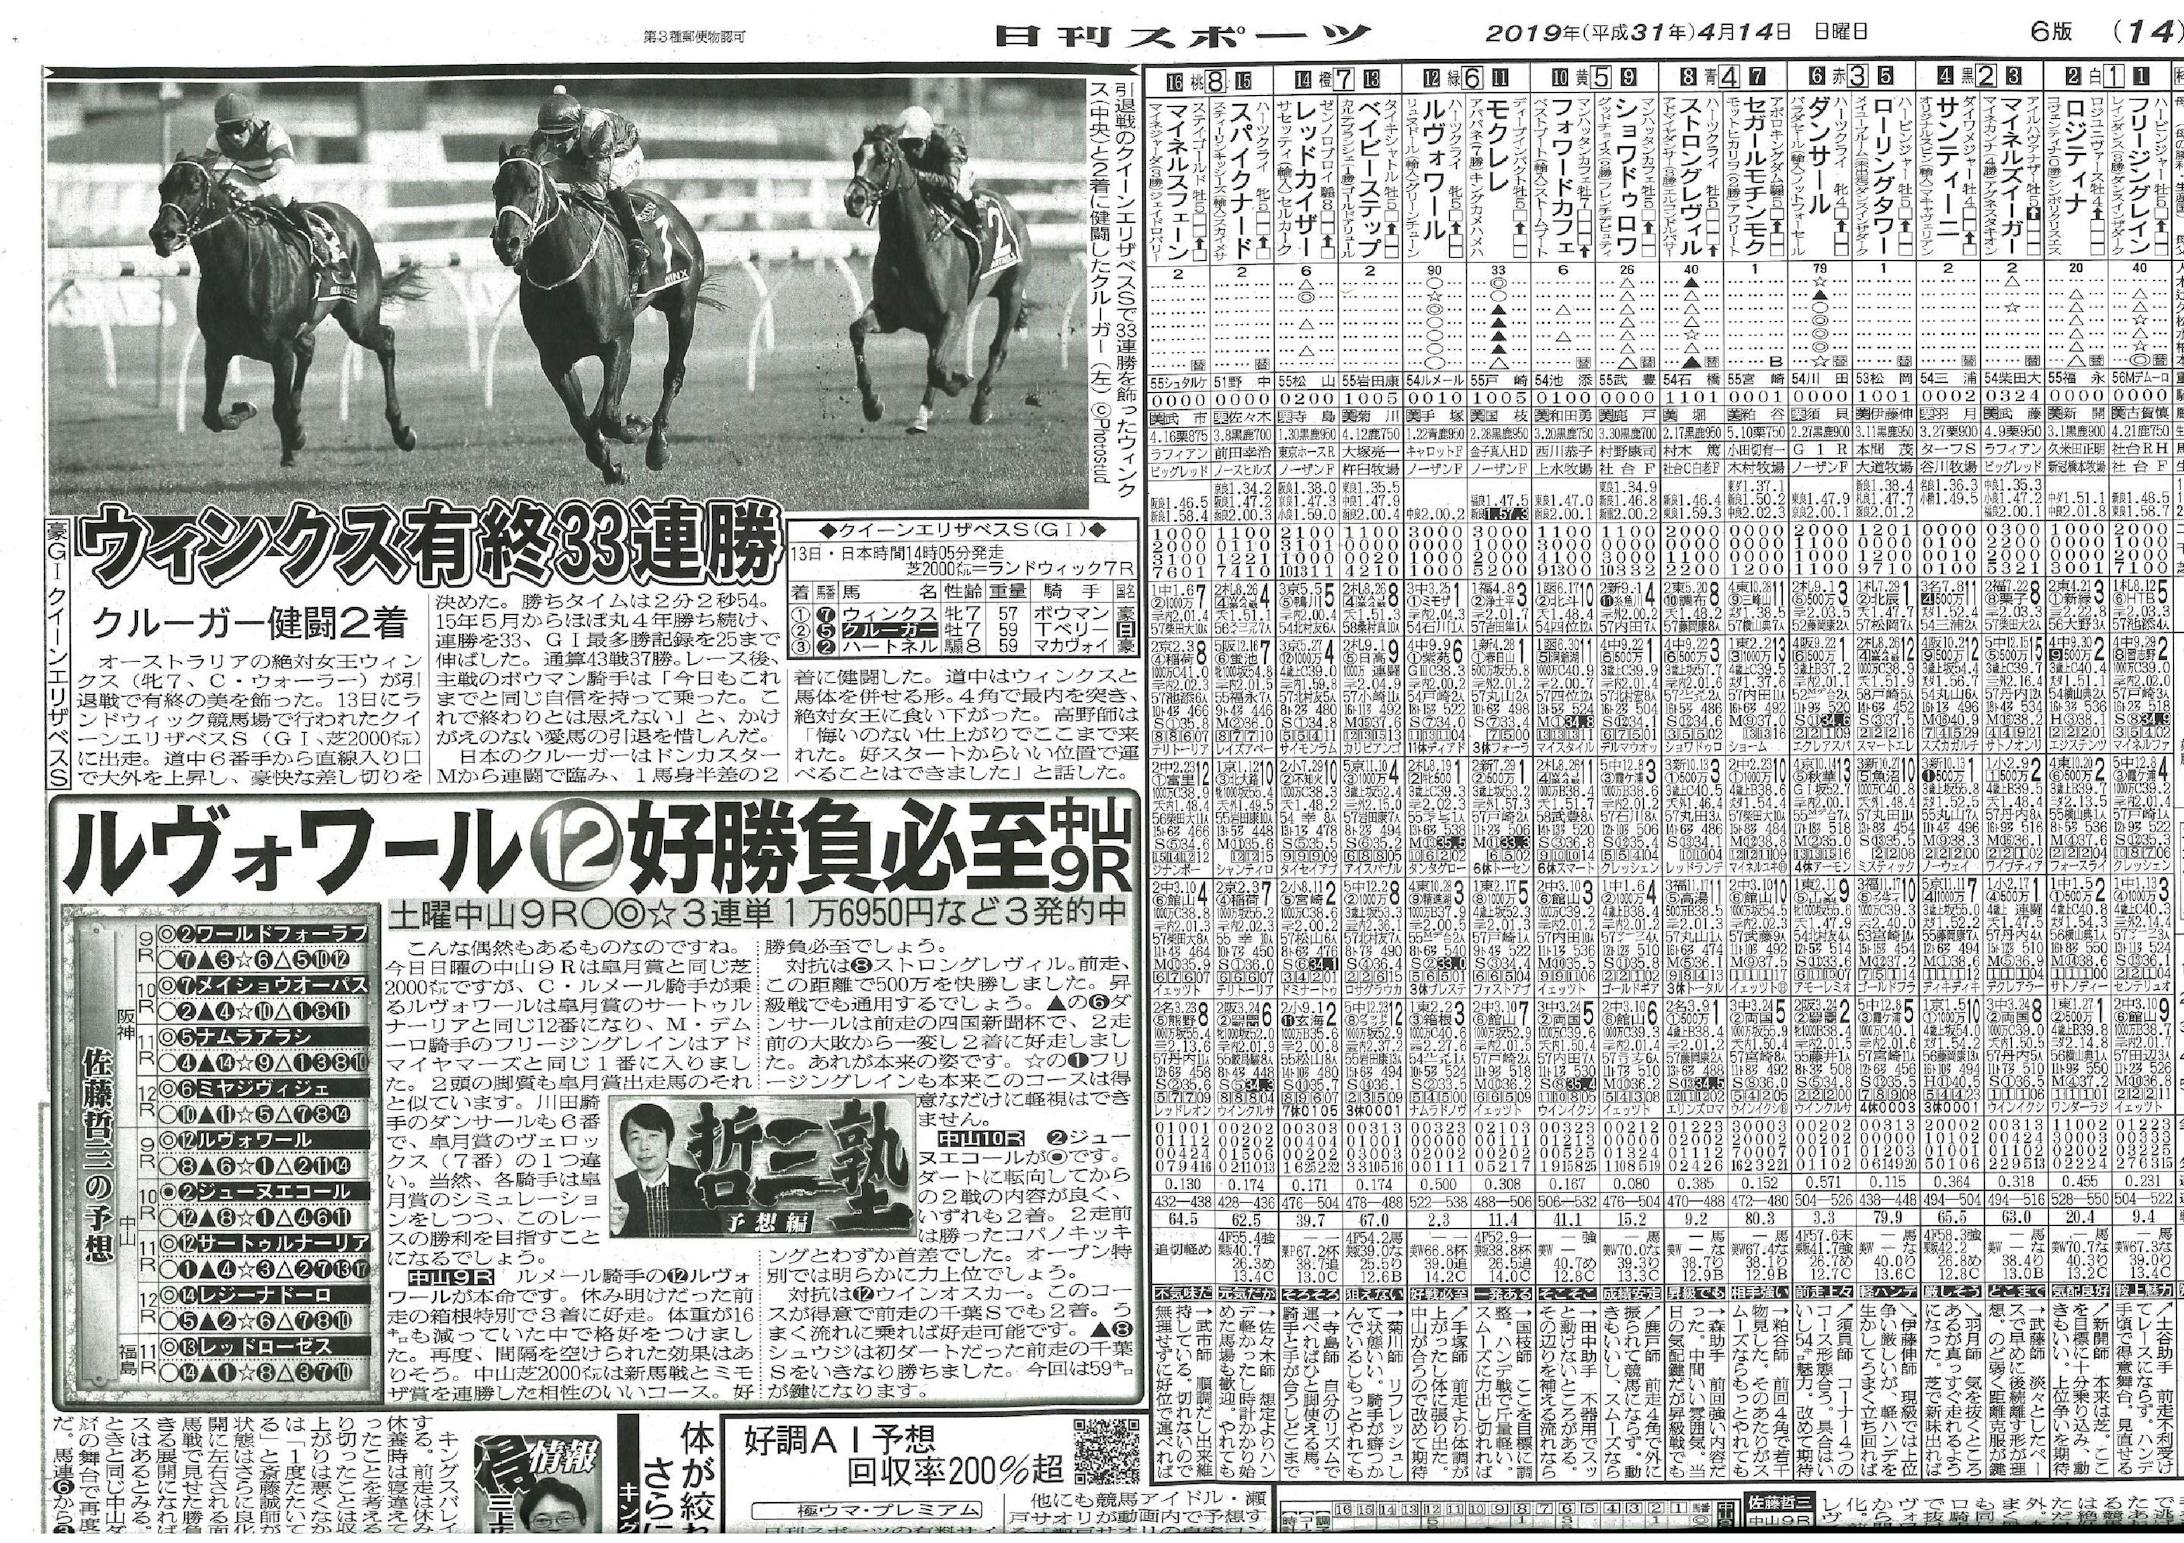 日刊スポーツ4/14販売 掲載写真-1